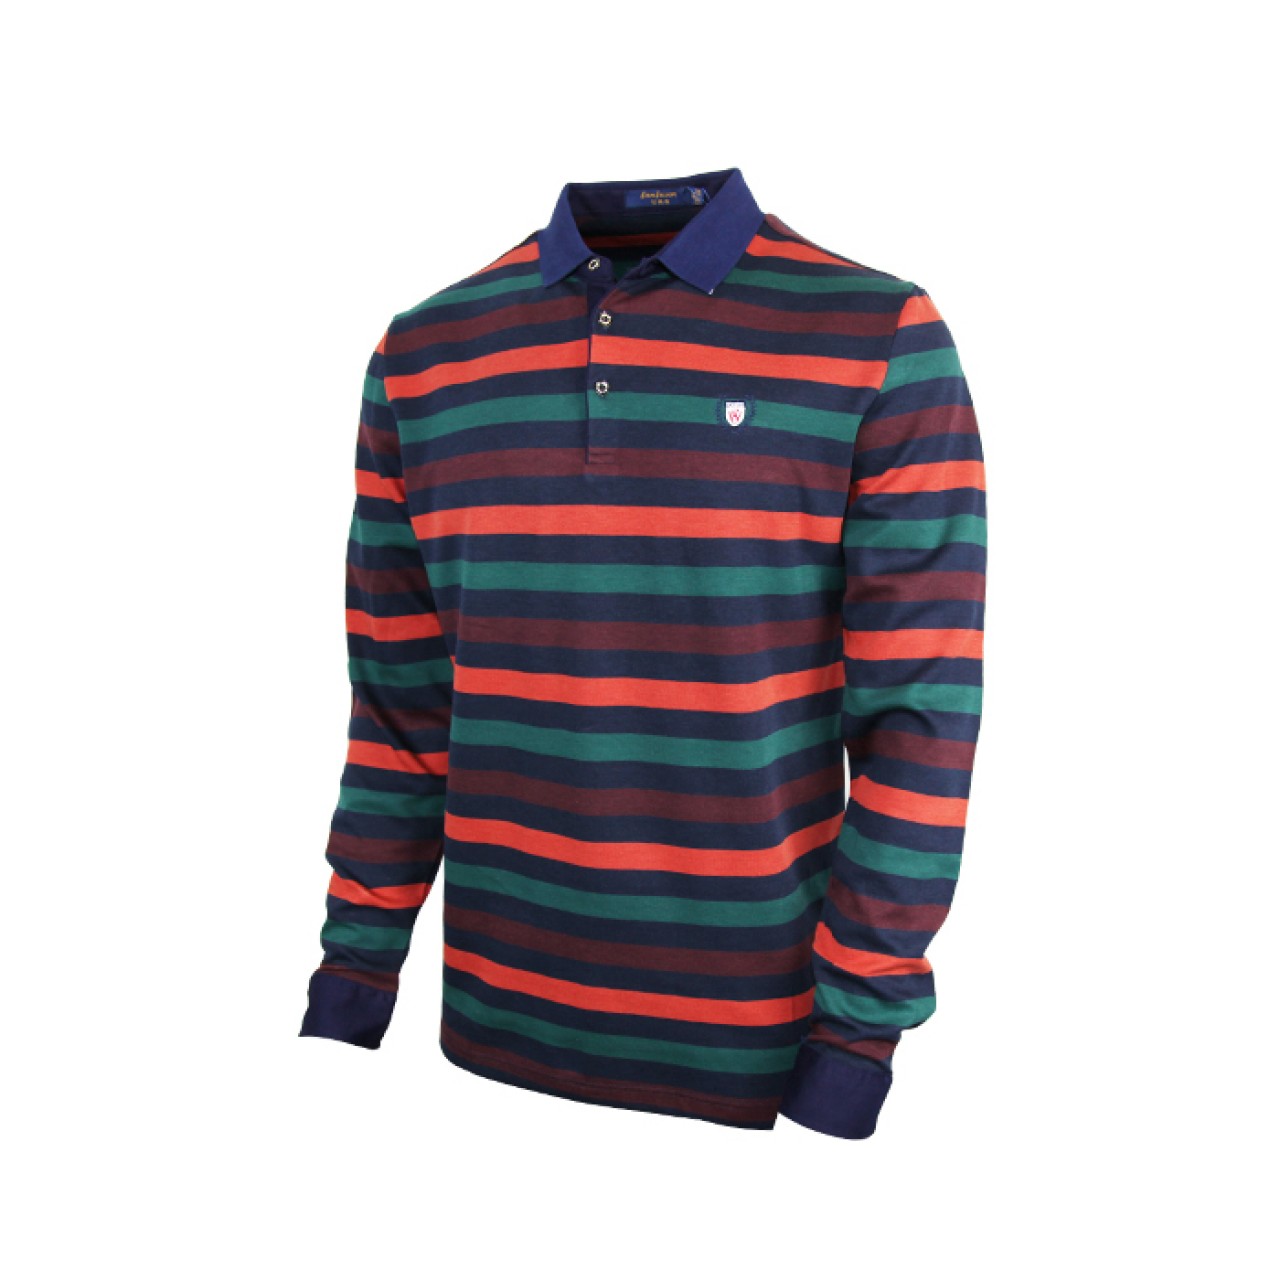 Full sleeve Multi Color Designer Shirt Polo